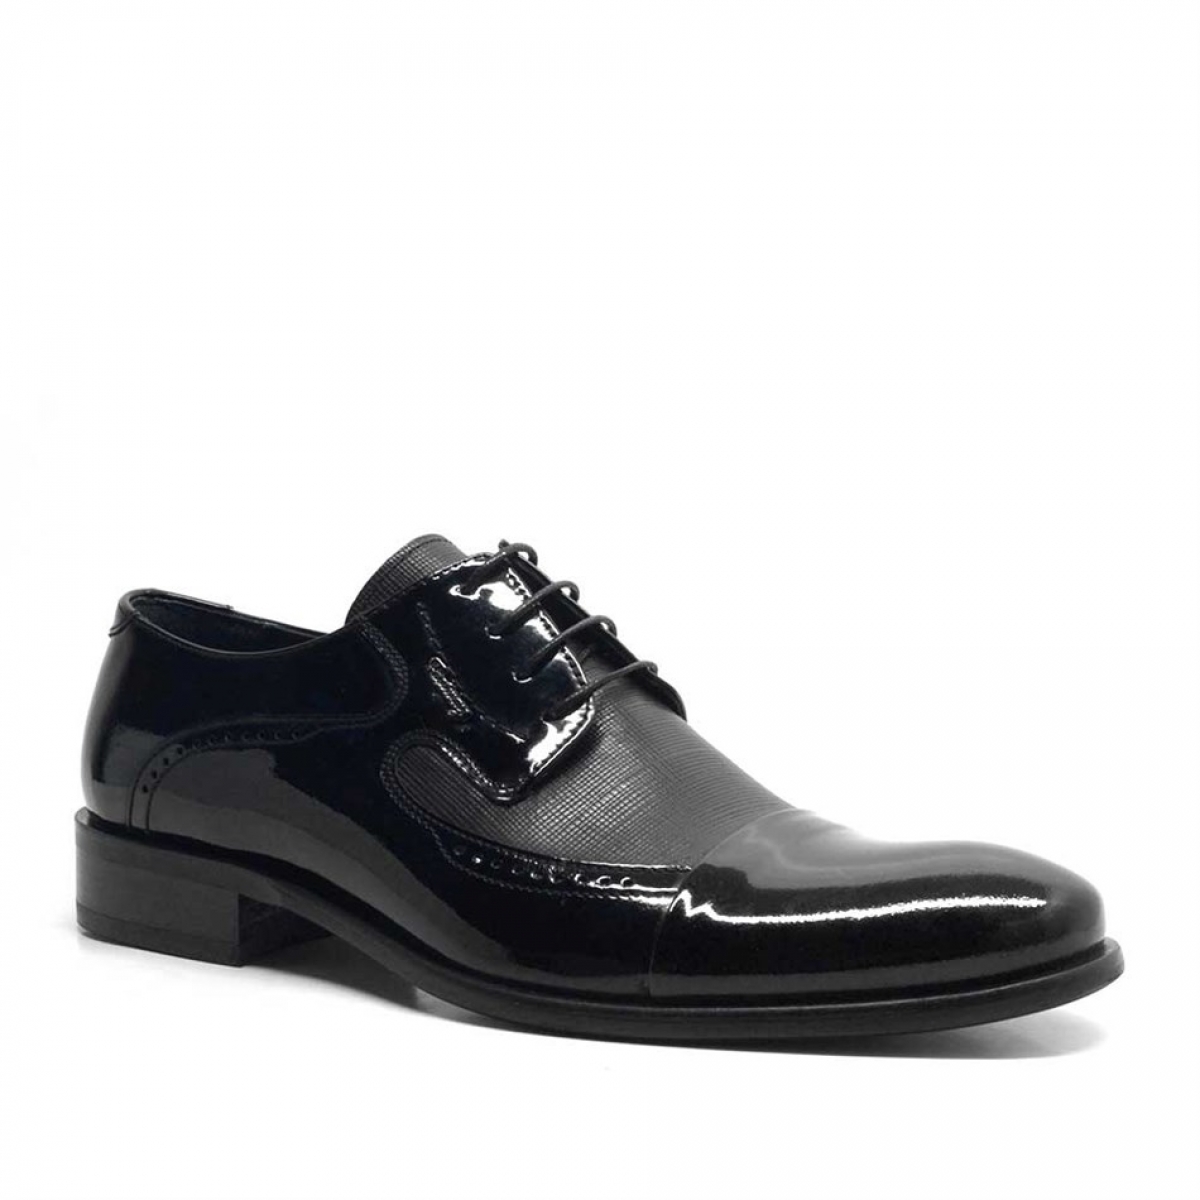 Flo Hakiki Deri Siyah Rugan Bağcıklı Klasik Erkek Ayakkabı. 3